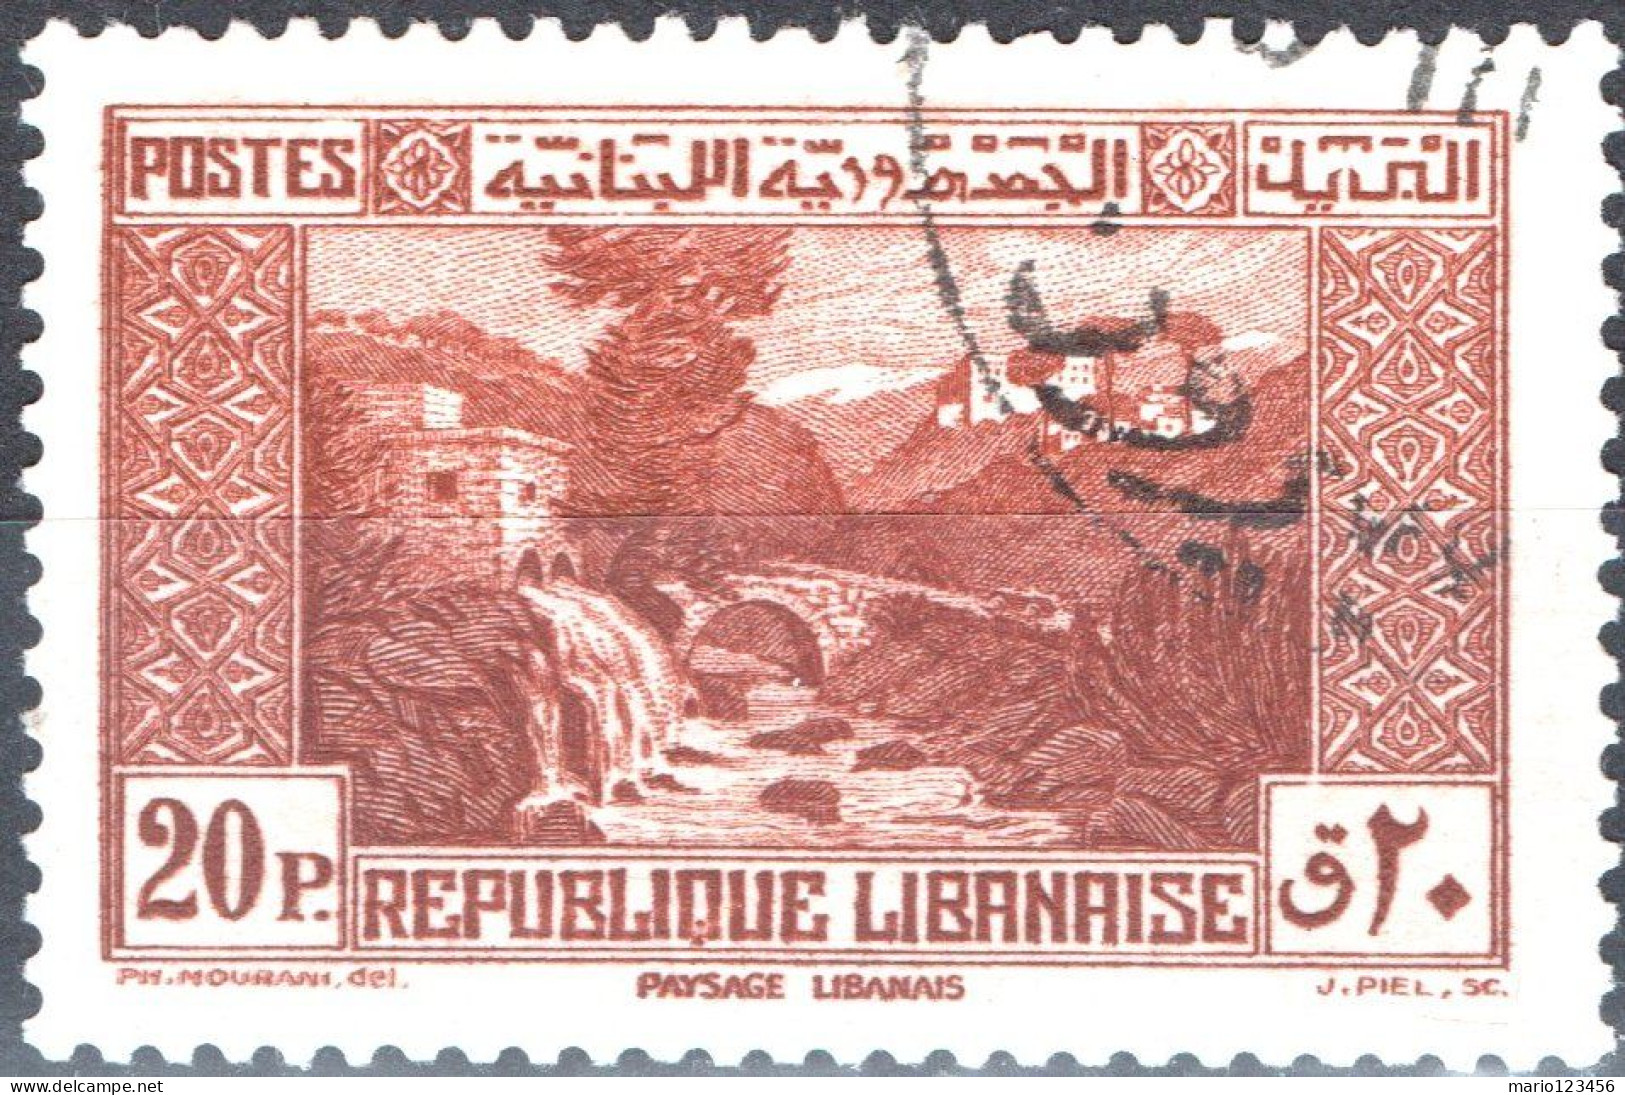 LIBANO, LEBANON, PAESAGGI, LANDSCAPES, 1940, USATI Scott:LB 143A, Yt:FR-LB 172 - Used Stamps